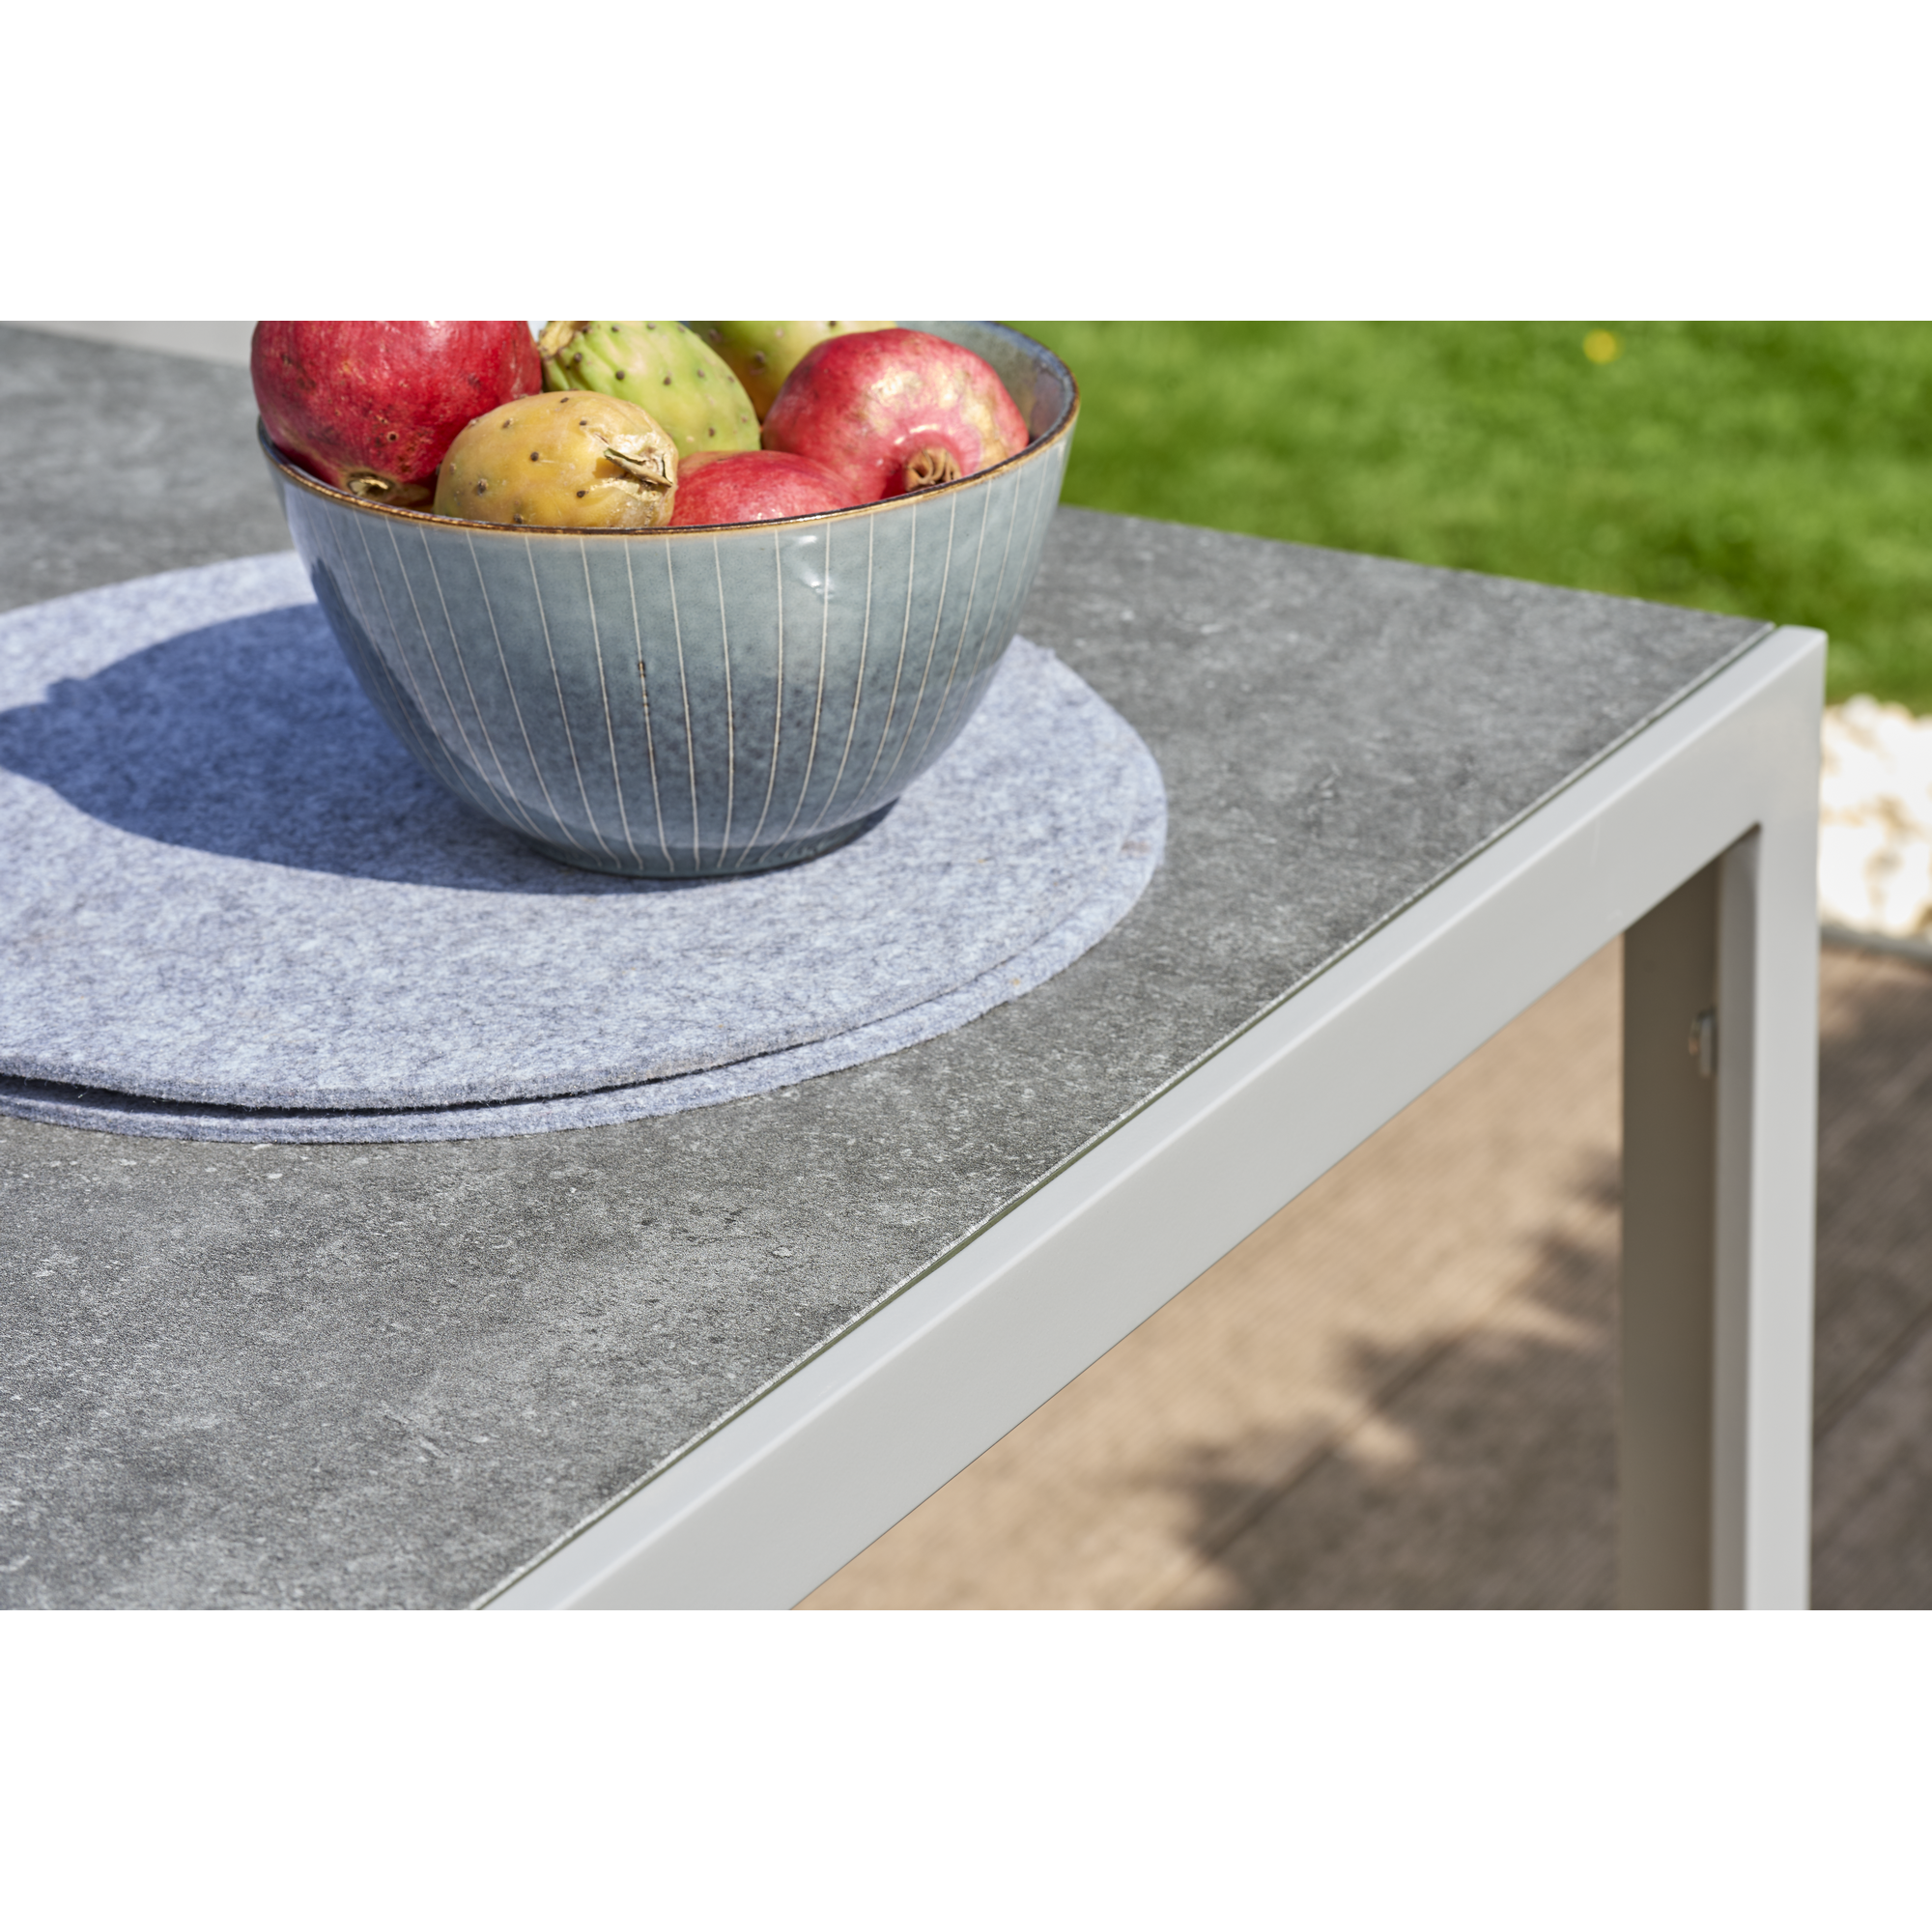 Gartentisch 'Meike 1' grau mit Sicherheitsglasplatte 150 x 90 x 72 cm + product picture